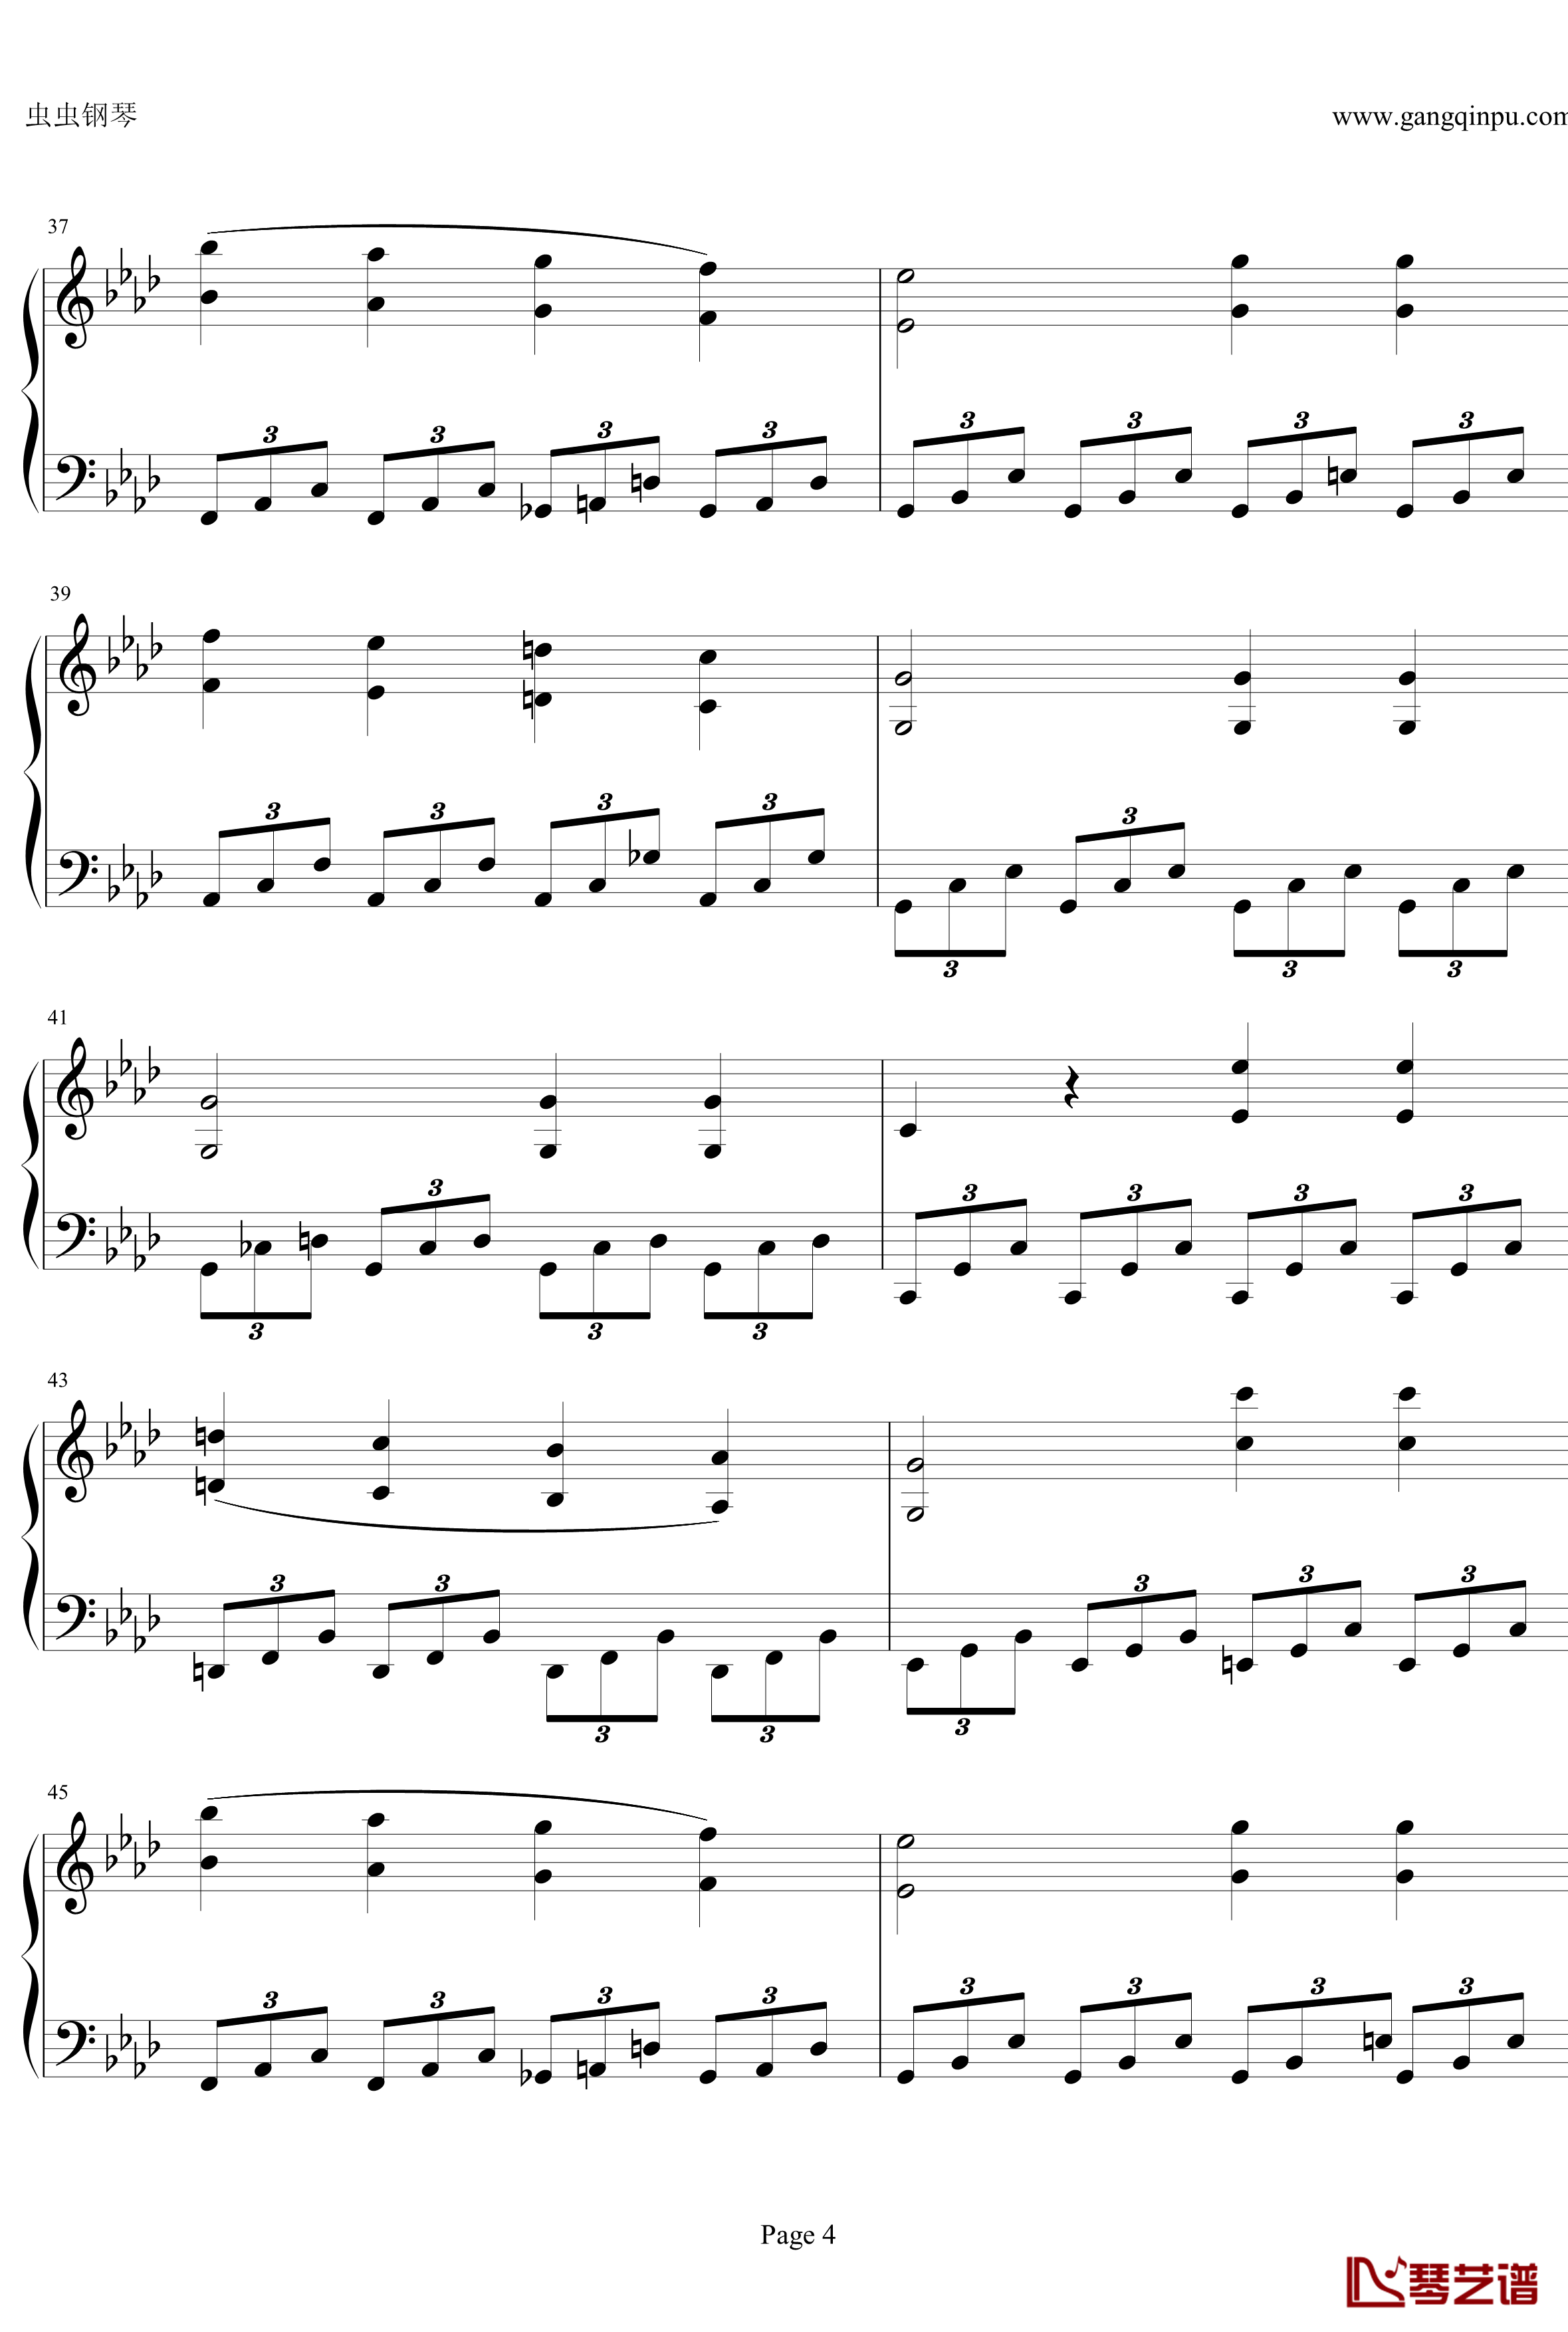 贝多芬第一钢琴奏鸣曲钢琴谱-作品2，第一号-贝多芬-beethoven4